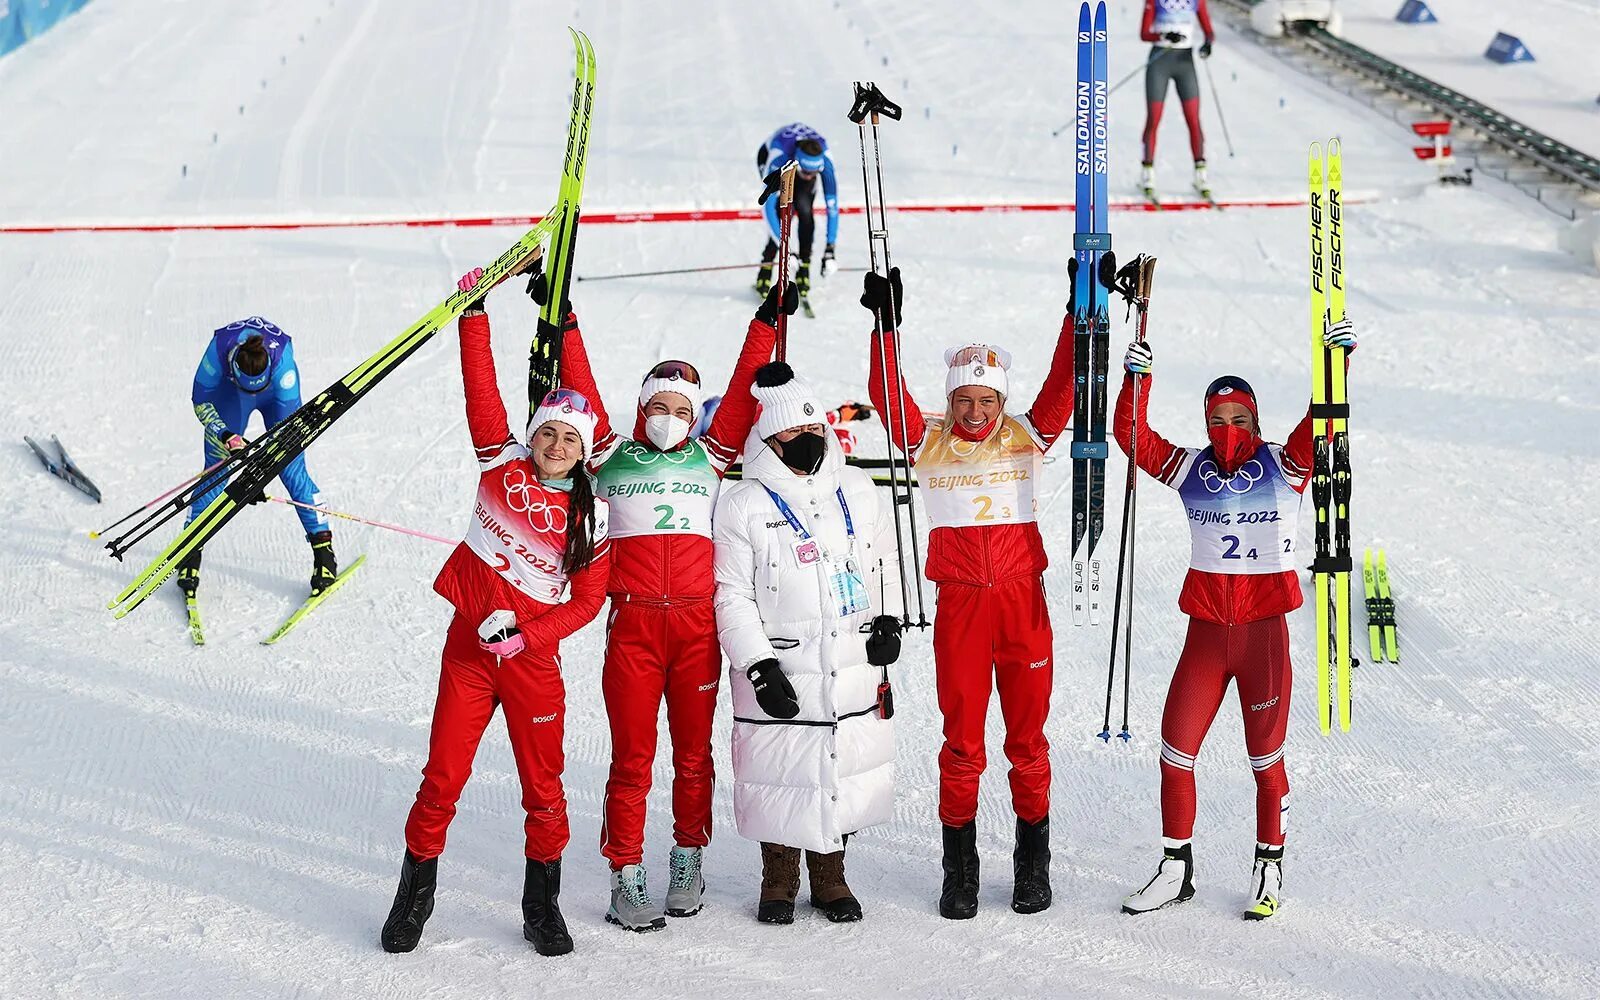 Лыжницы России на Олимпиаде 2022. Впереди нас ехали спортсмены лыжники вовремя